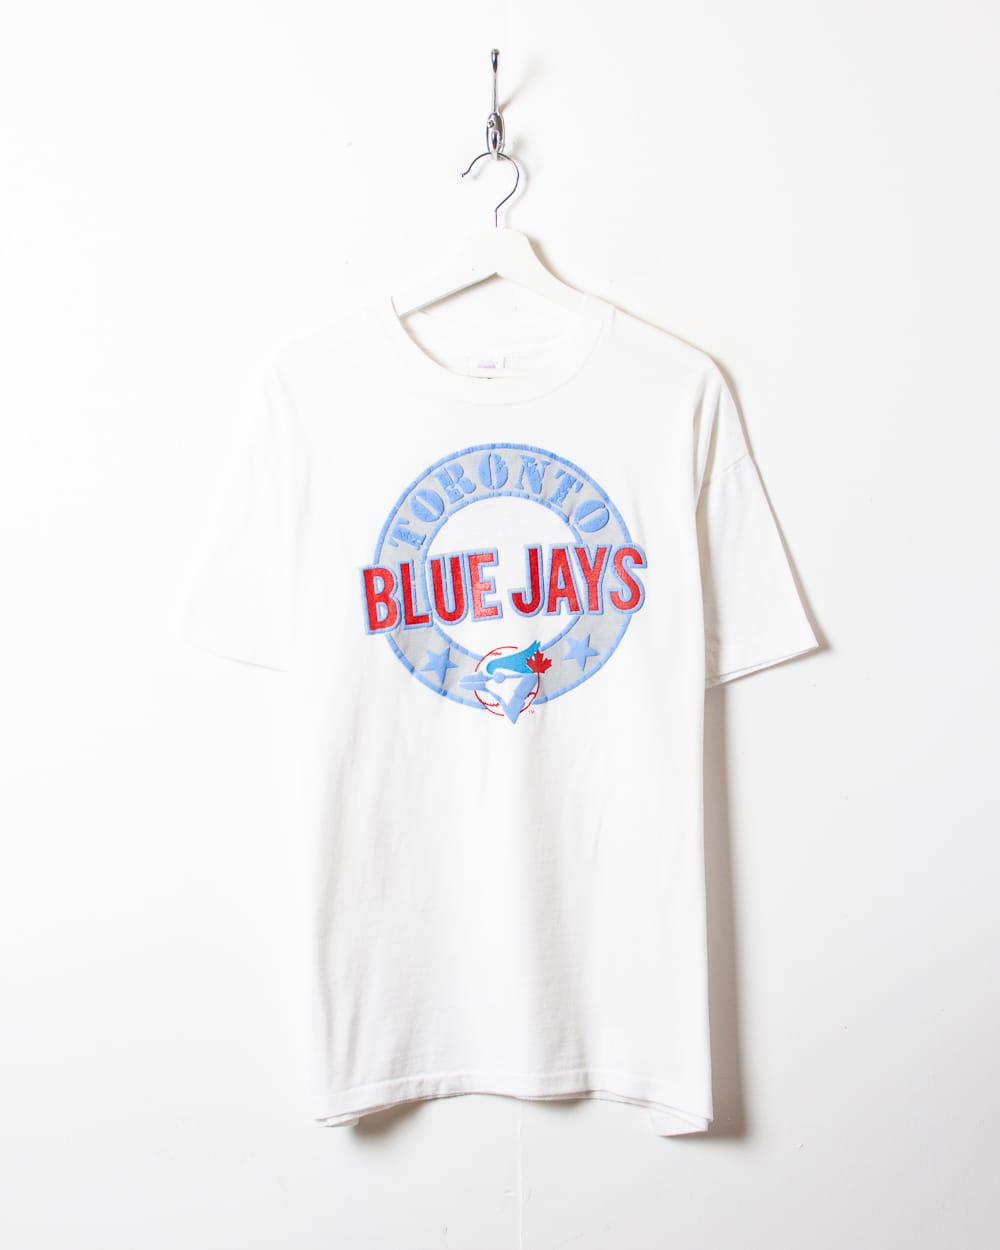 Vintage Toronto Blue Jays Sweatshirt 1/4 Zip Medium Blue 1990s MLB